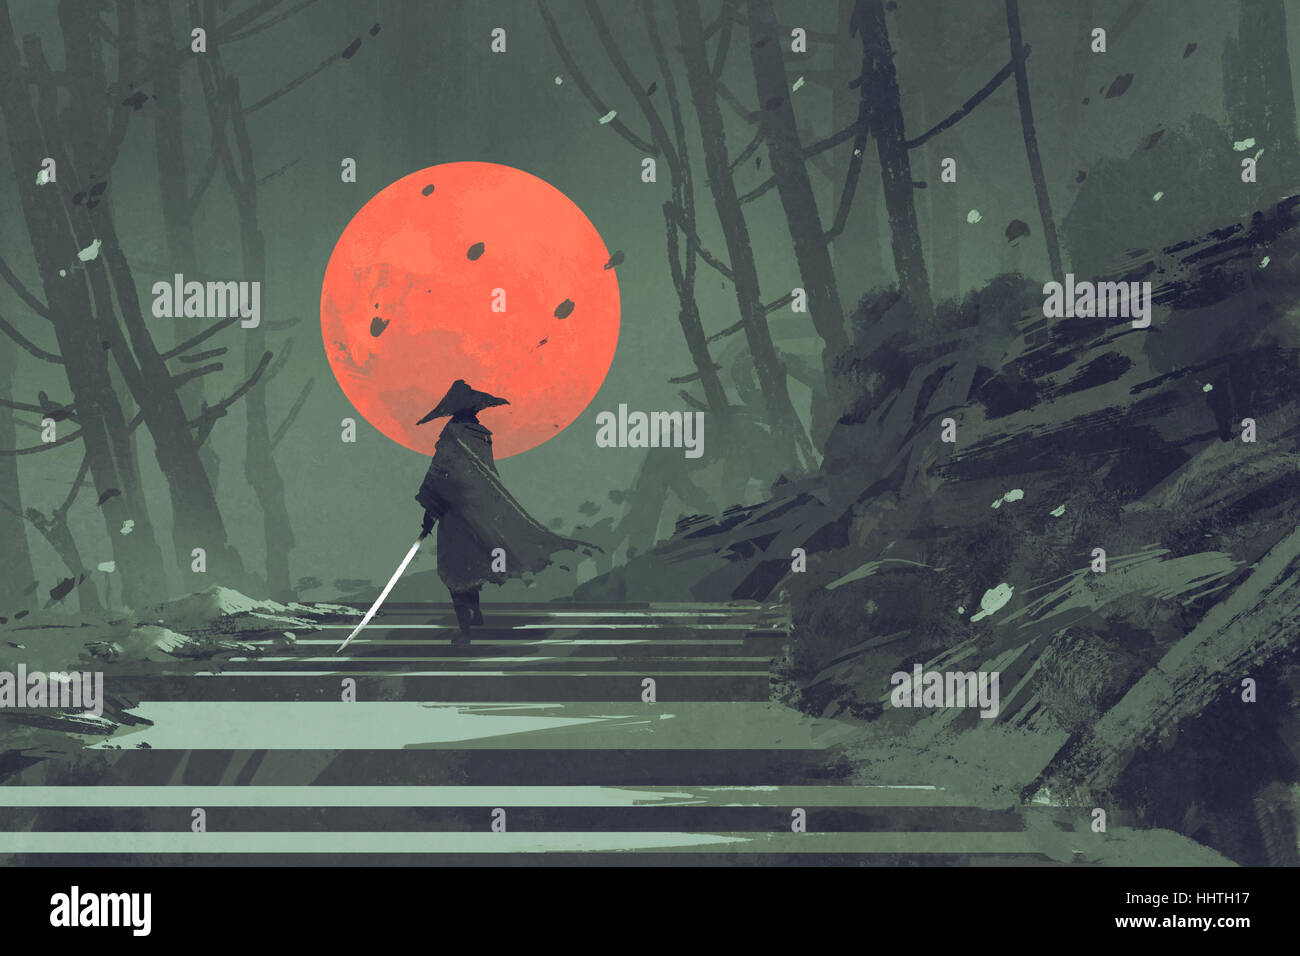 Samurai debout sur escalier en forêt de nuit avec la lune rouge sur fond de peinture,illustration Banque D'Images